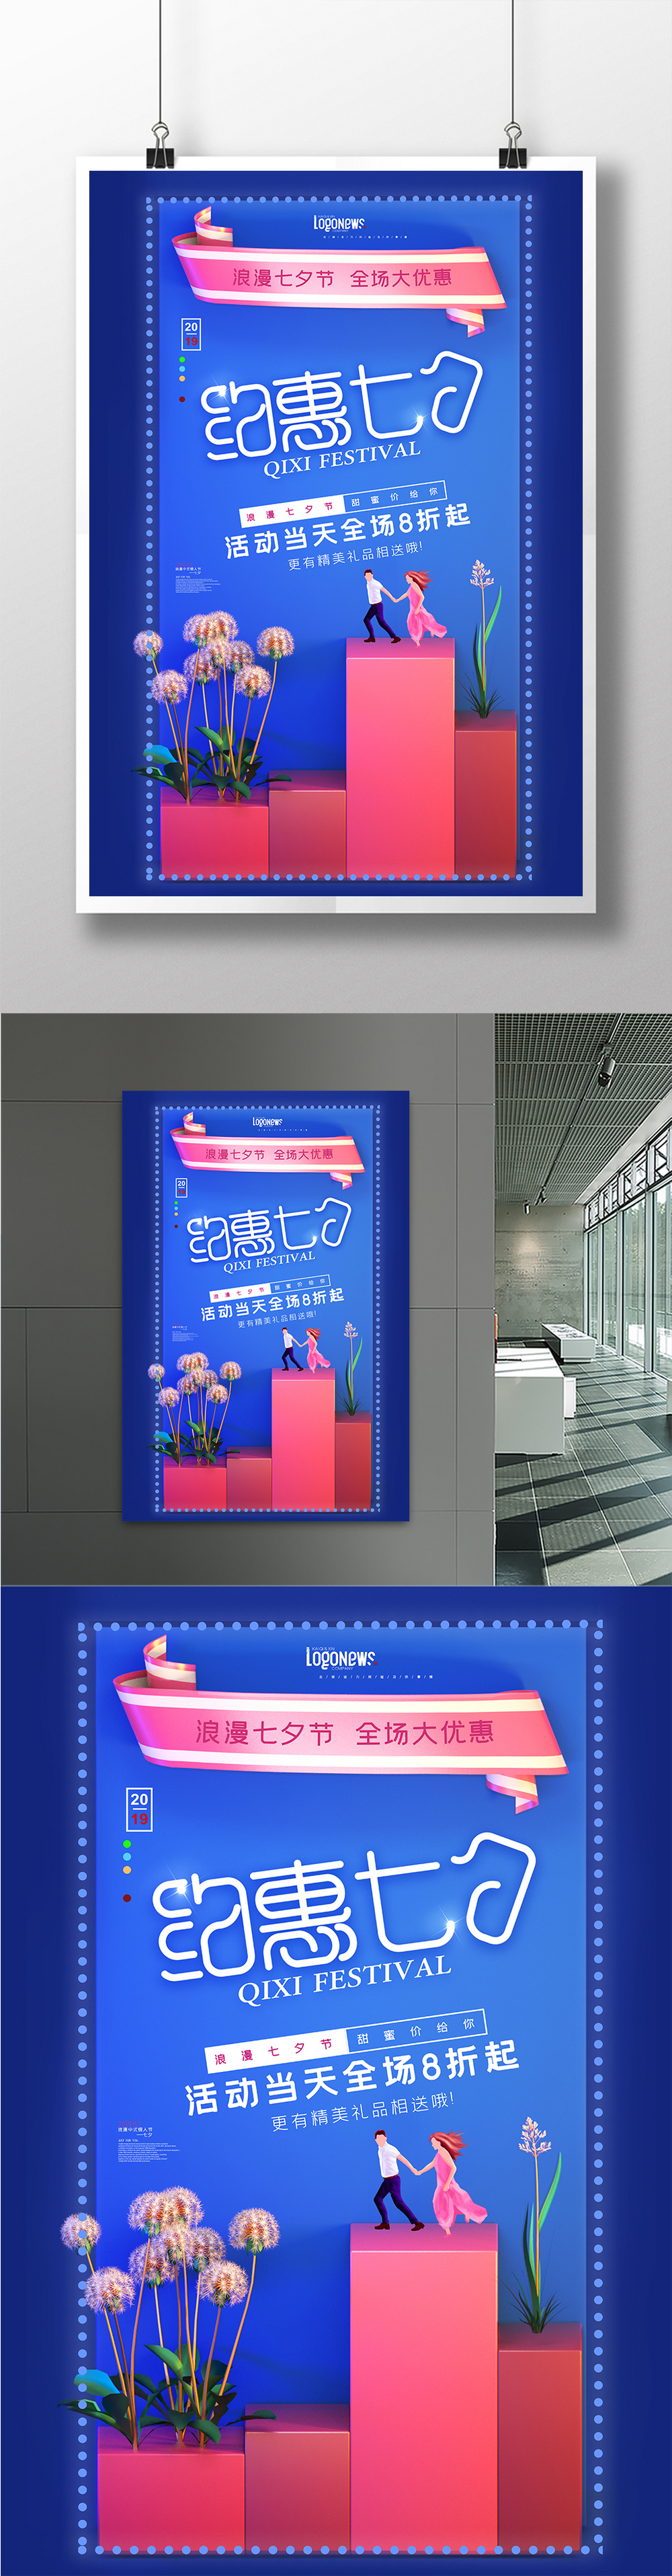 蓝色C4D立体时尚七夕情人节促销海报